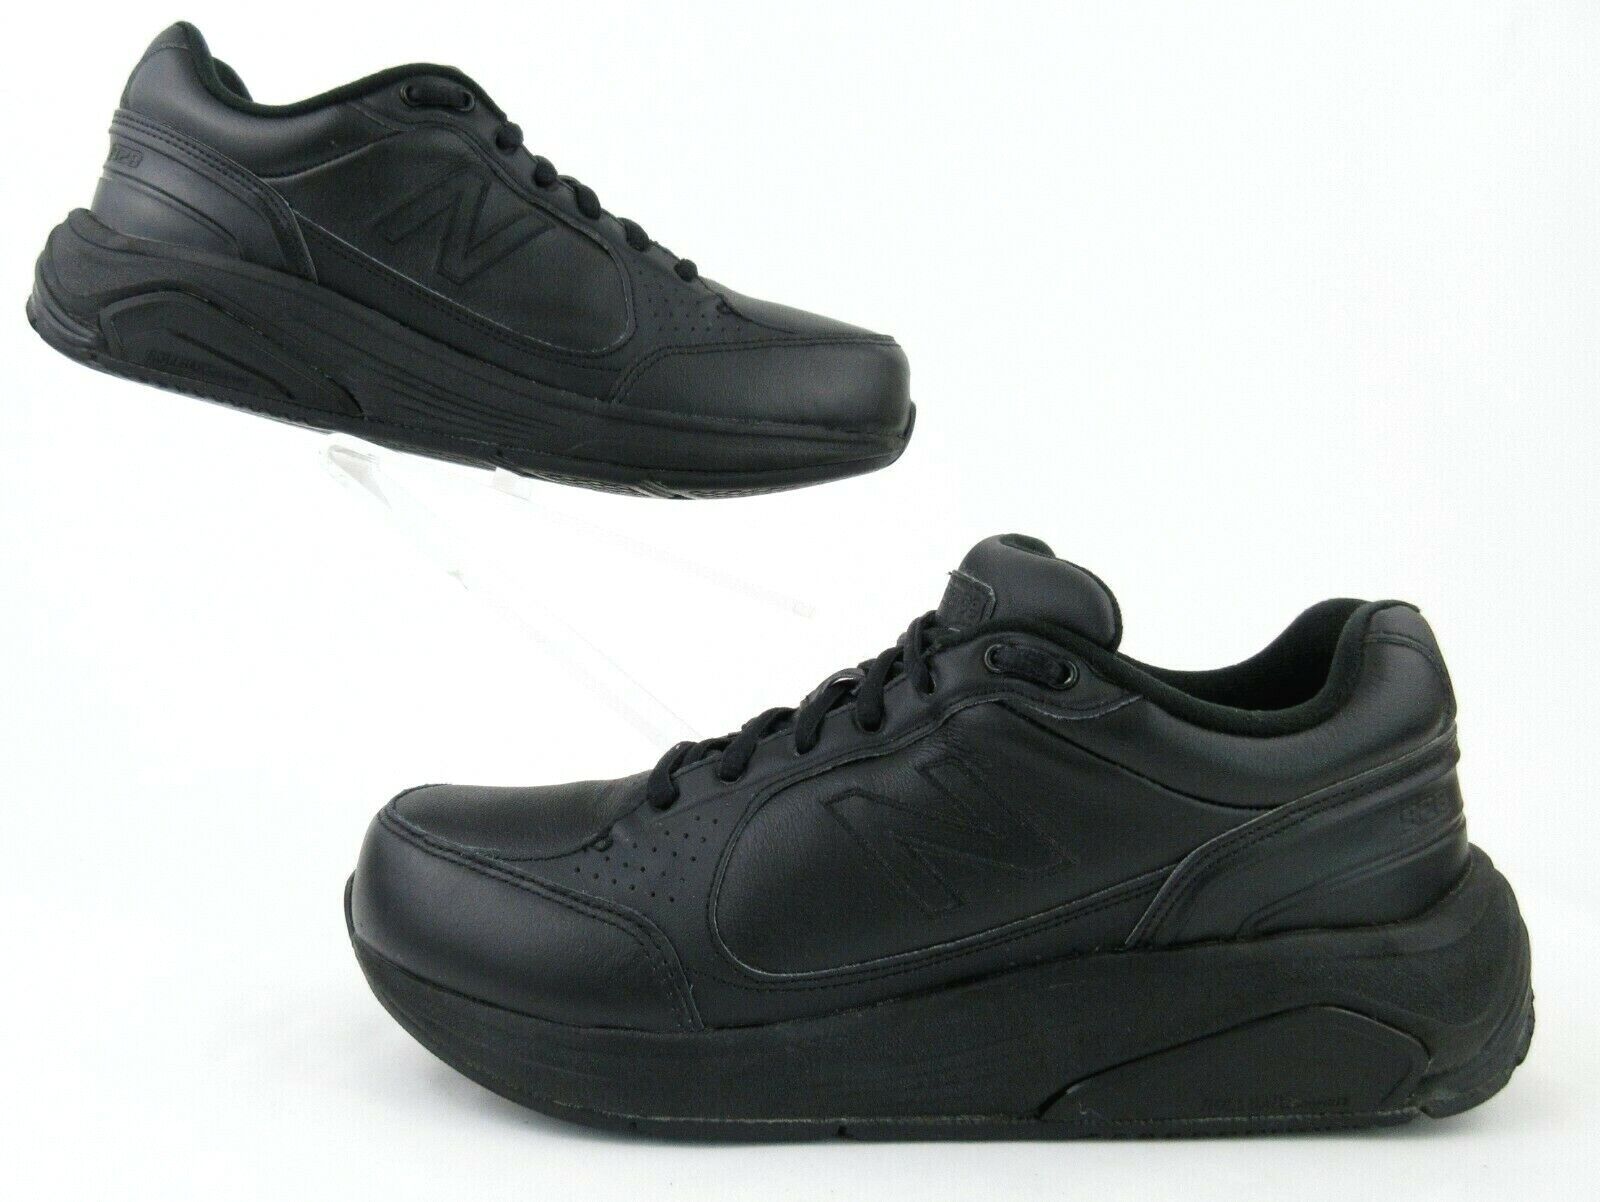 handelaar Door Rode datum New Balance 928v1 Womens Walking Shoes Black Leather Sz 8D Wide Width | eBay